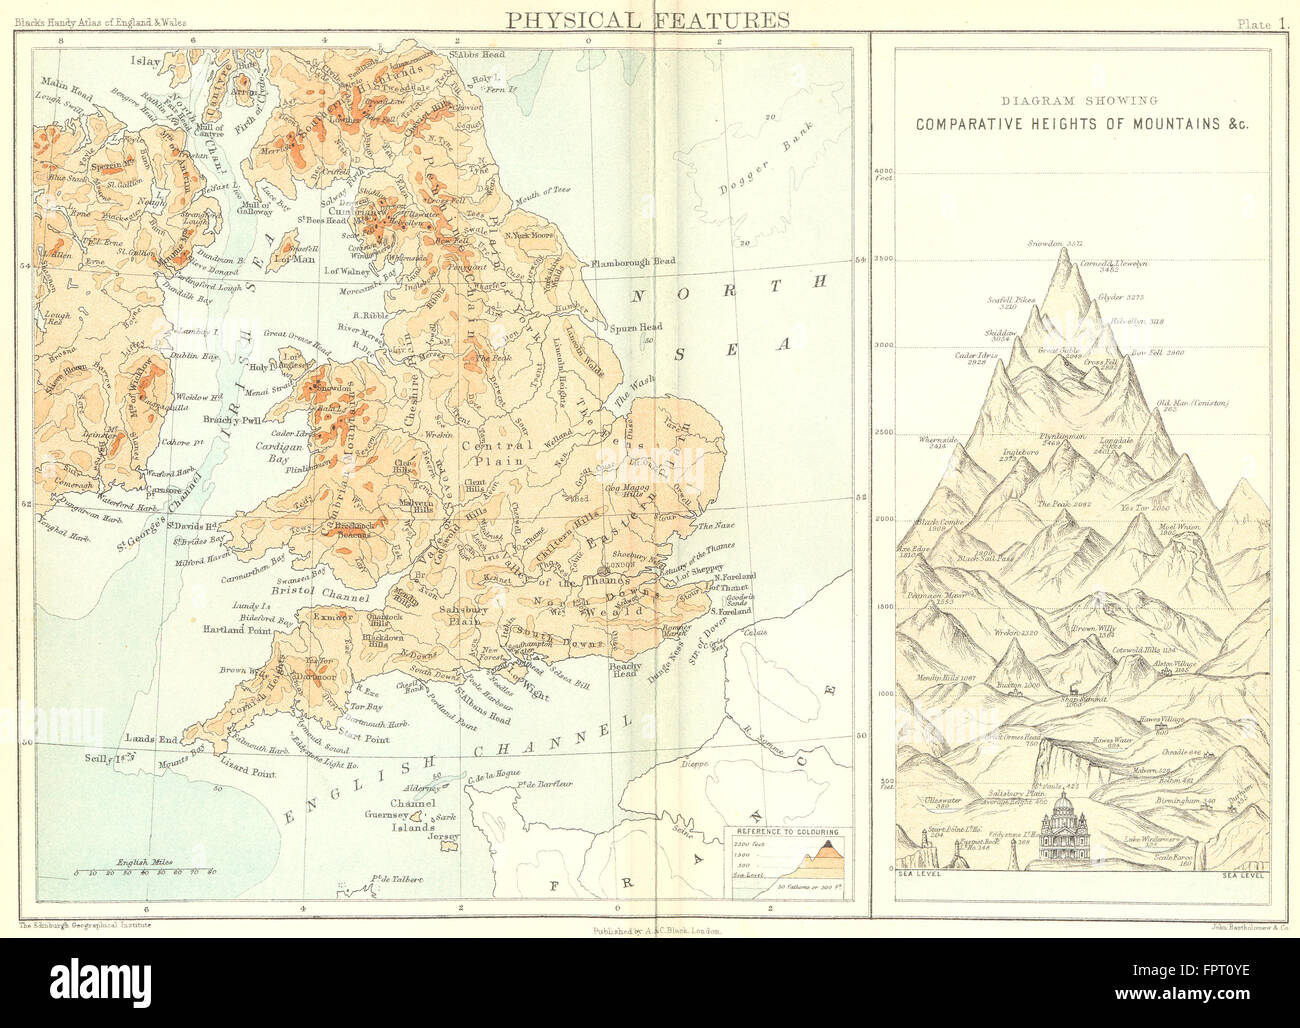 Inglaterra, País de Gales: características físicas; Montañas, 1892 mapa antiguo Foto de stock